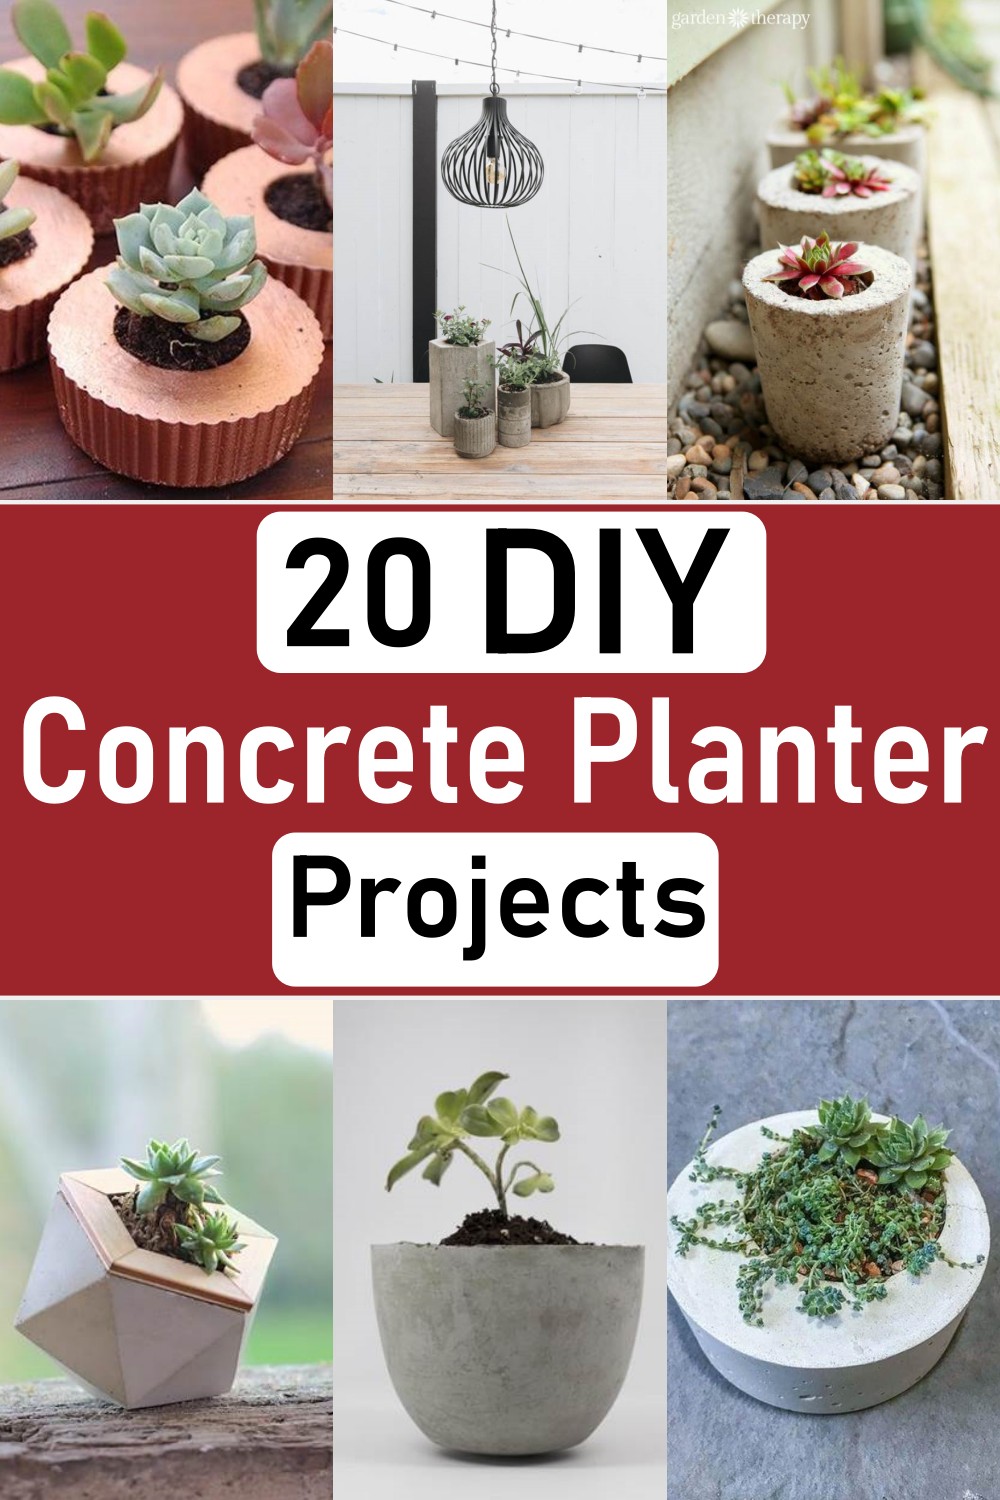 Concrete Planter Projects